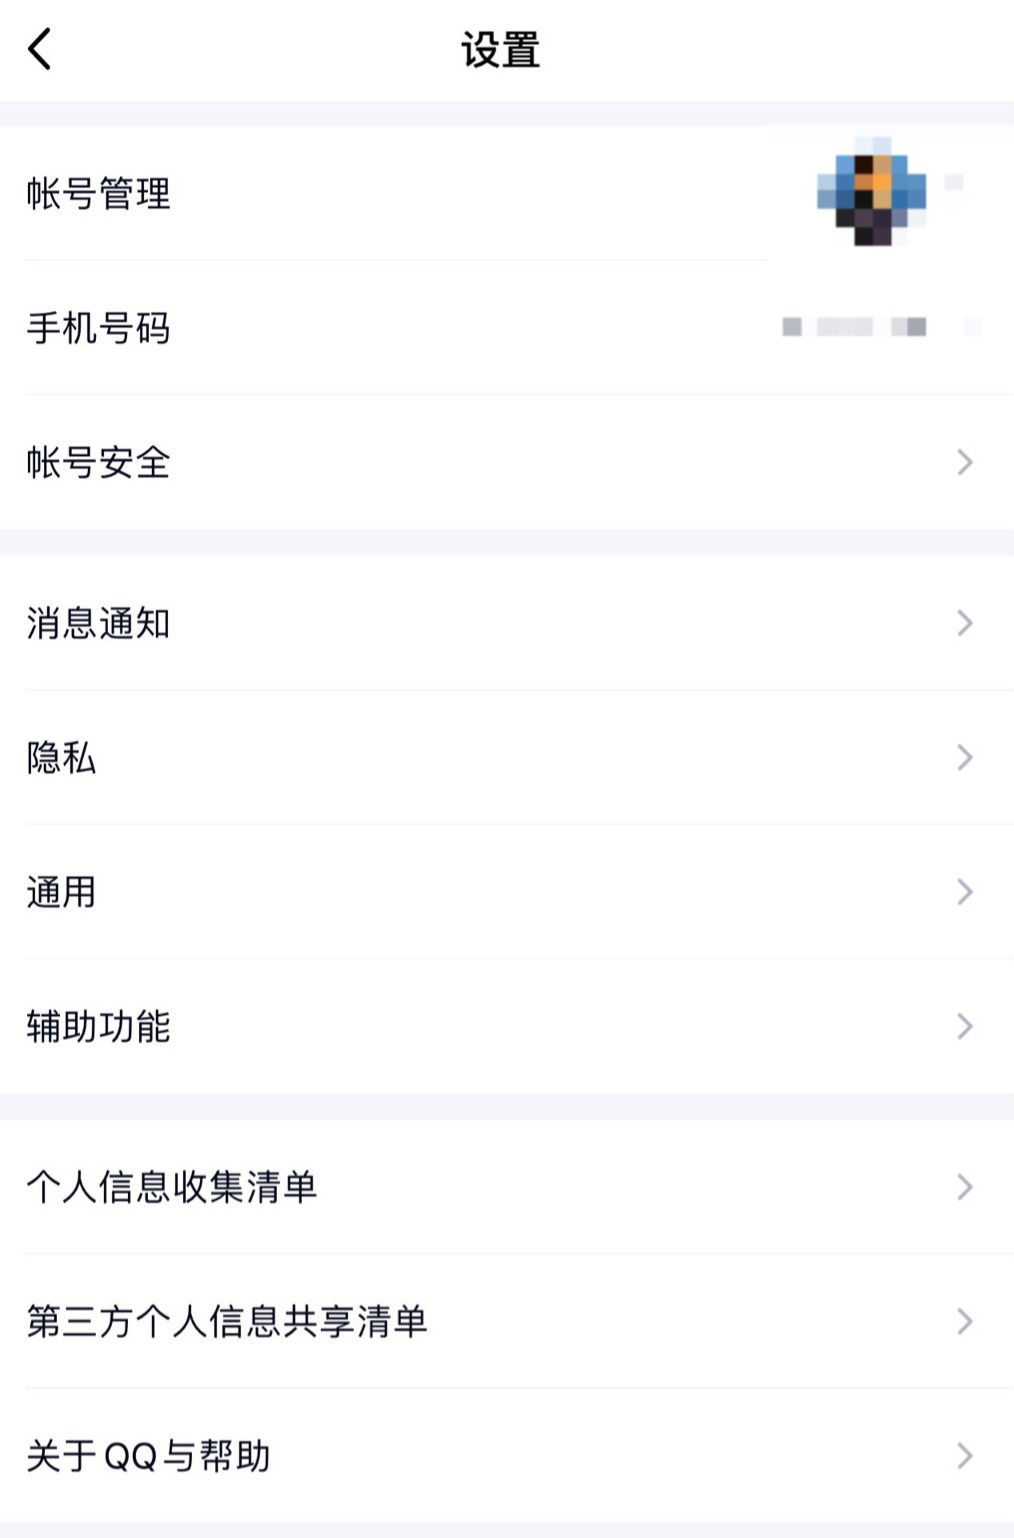 内测版|腾讯旗下 App 暂停更新后，iOS 版 QQ 发布 8.8.55.294 内测版